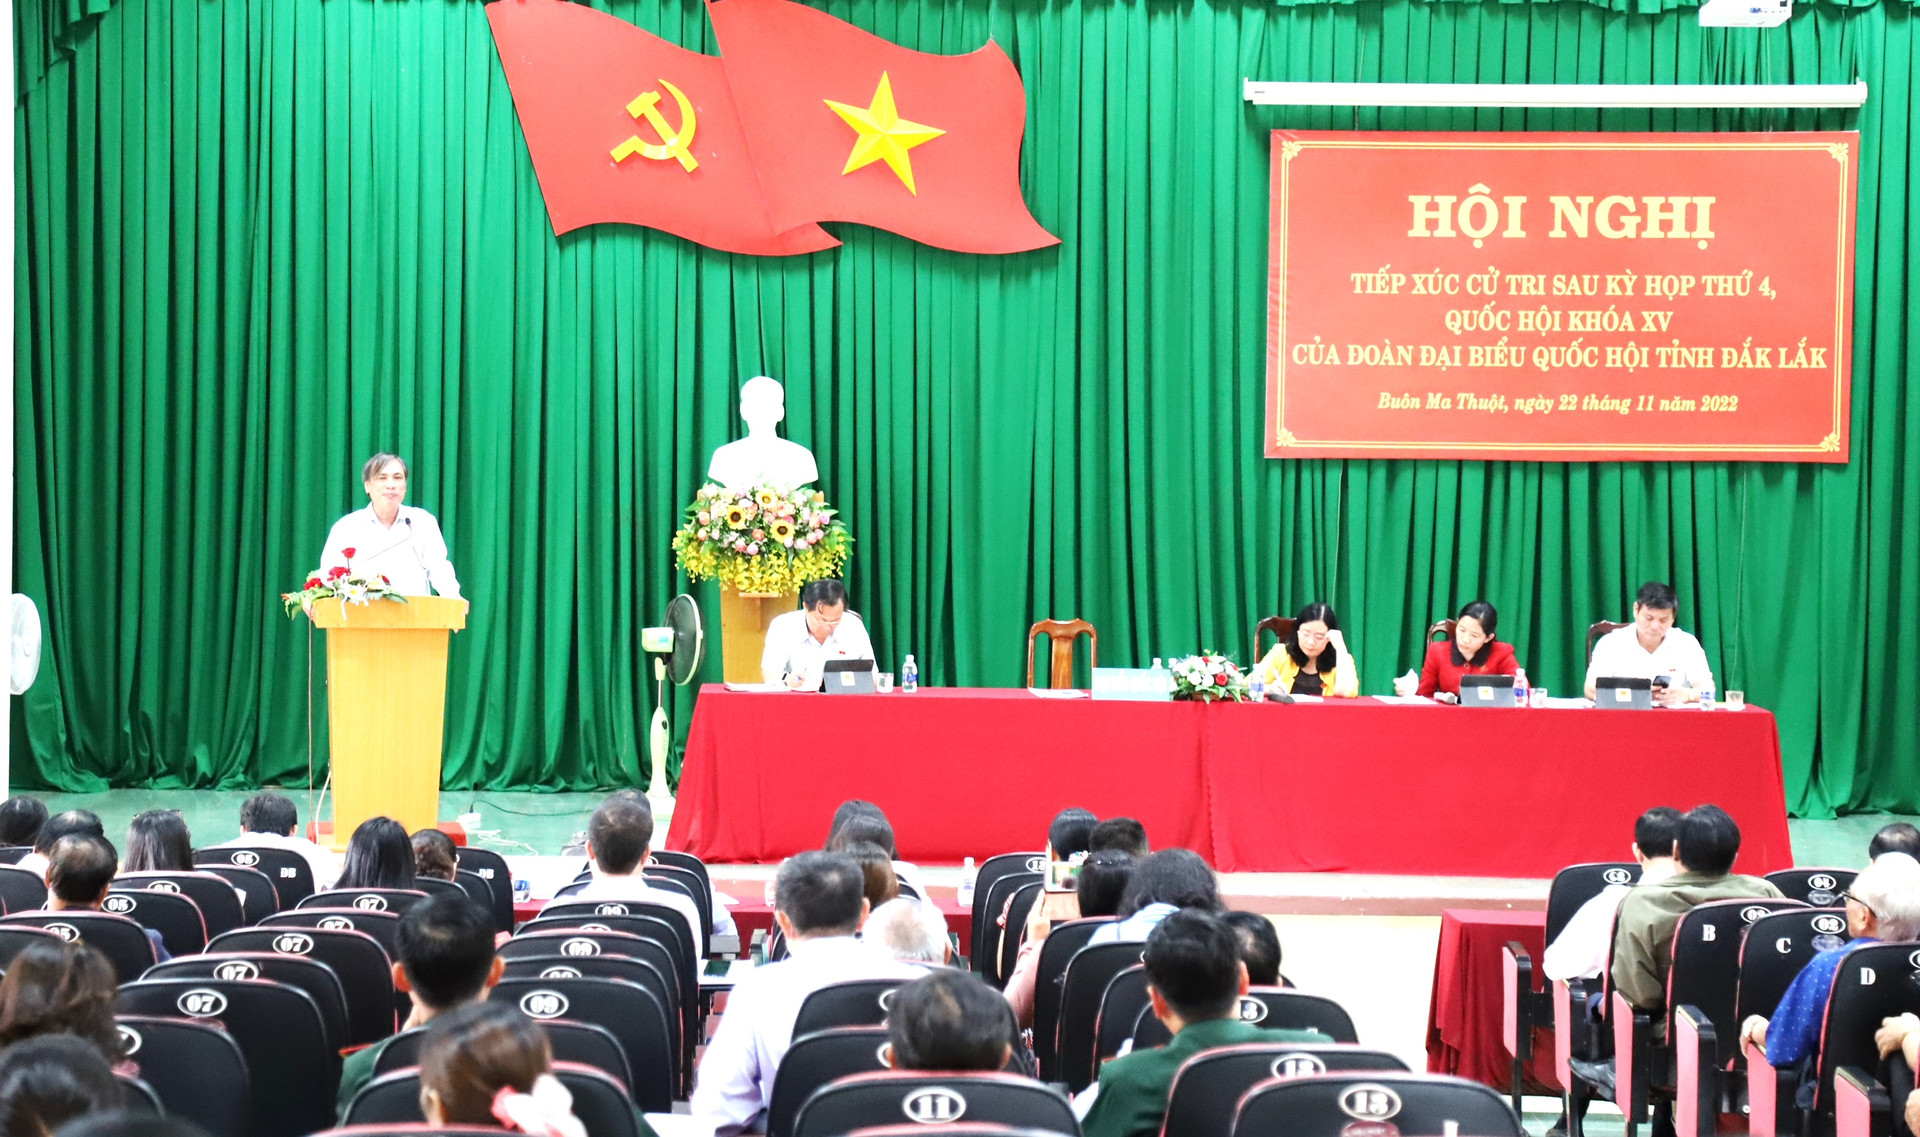 Đại diện Sở Tài nguyên và Môi trường tỉnh Đăk Lắk giải đáp các thắc mắc của cử tri thành phố Buôn Ma Thuột.